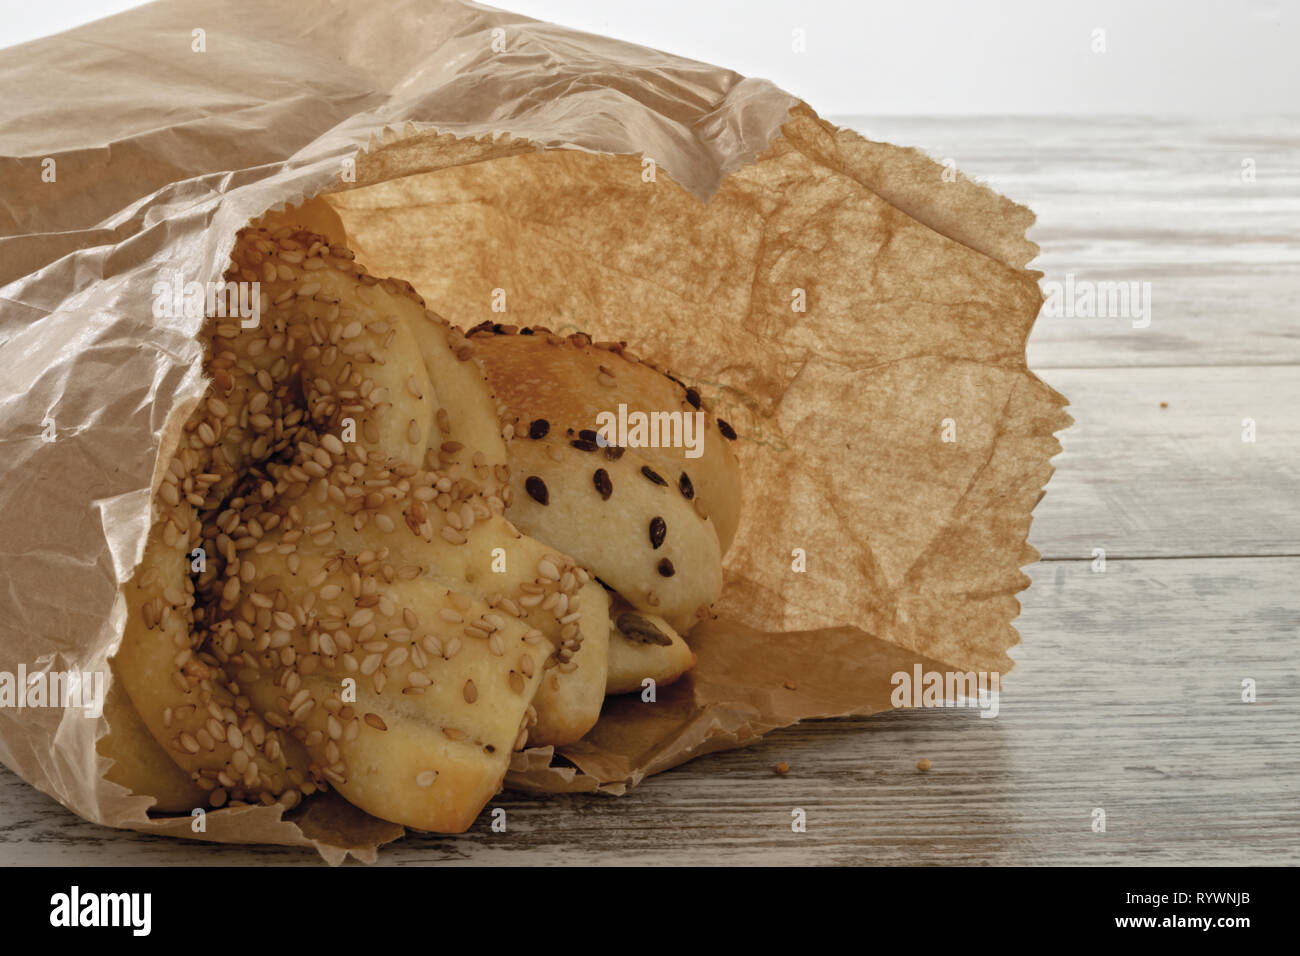 pane italiano con seme vari nel sacchetto di carta dall'alto Stock Photo -  Alamy